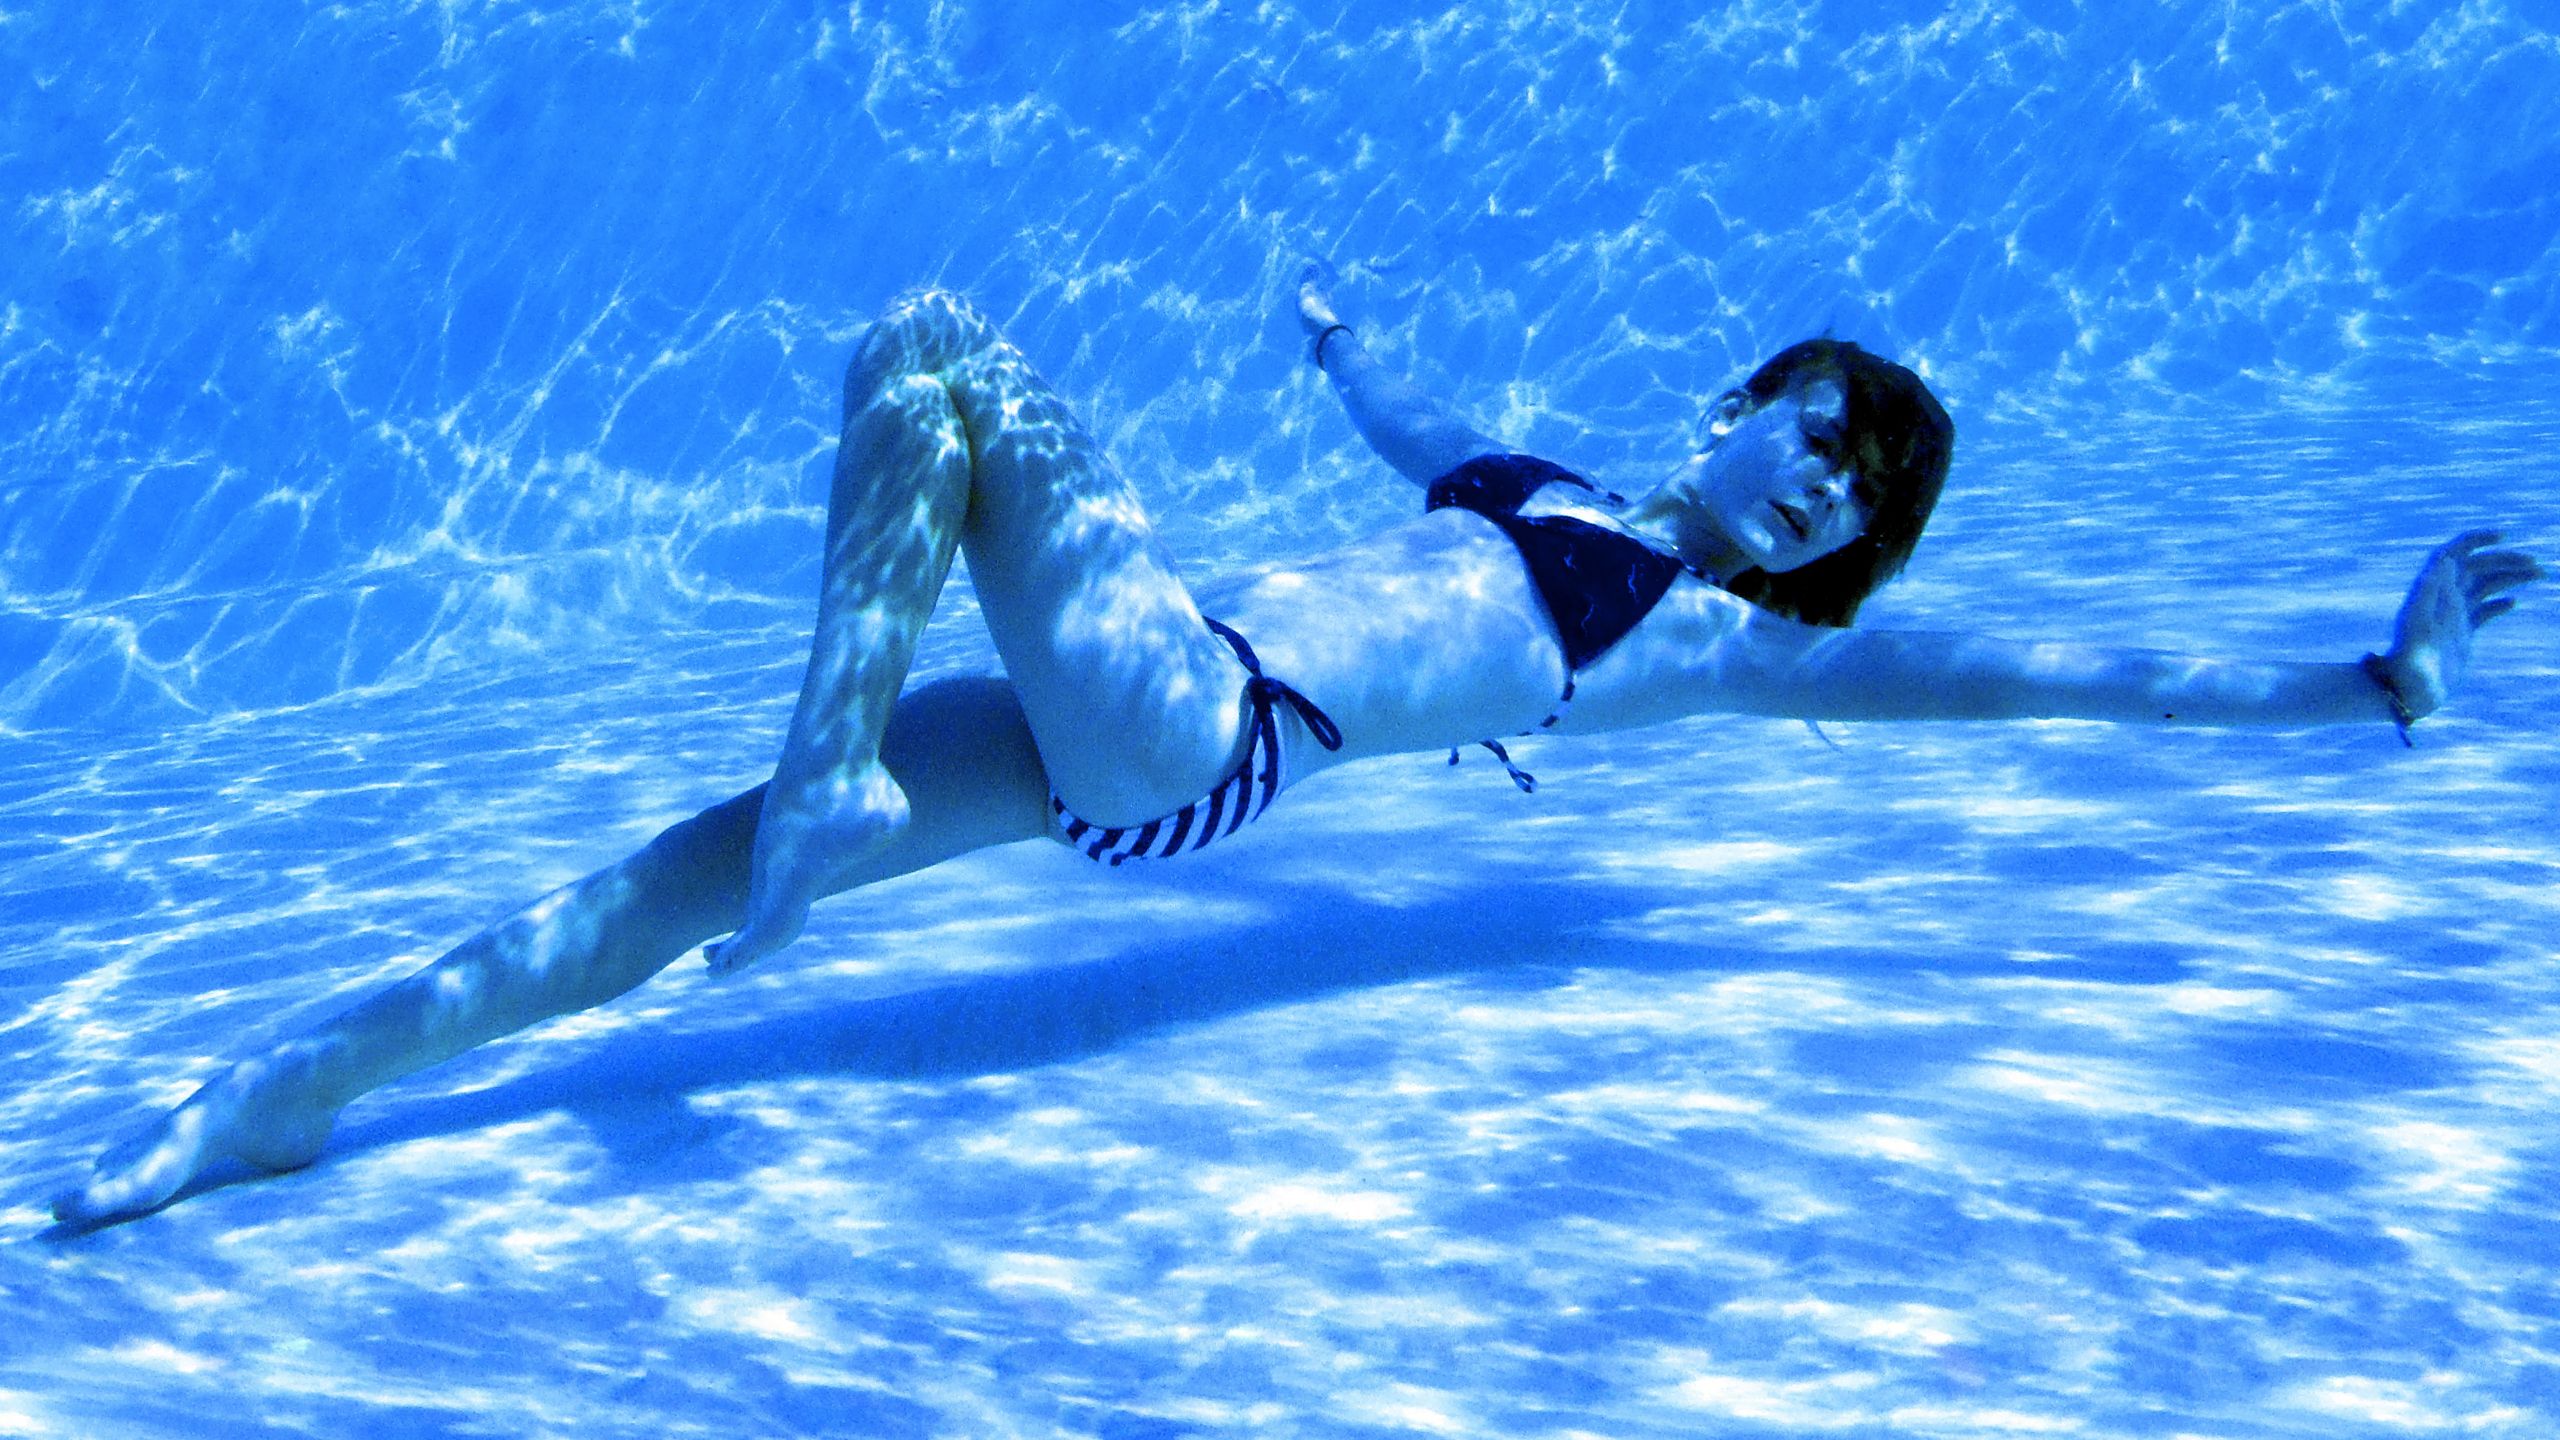 Enjoy underwater panties public beach best adult free images